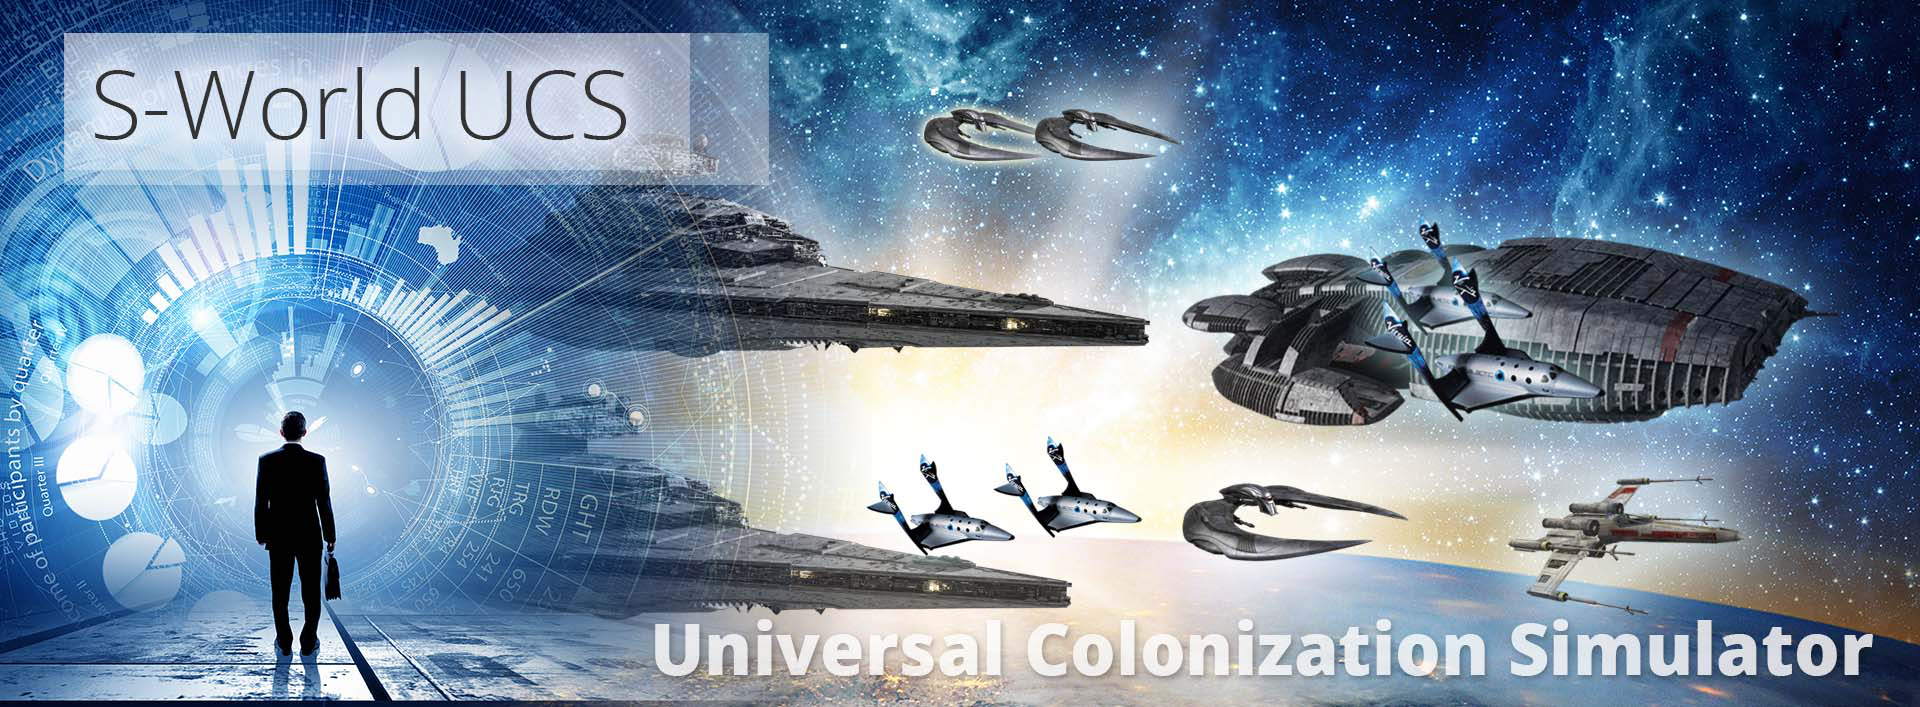 S-World UCS - Universal Colonization Simulator